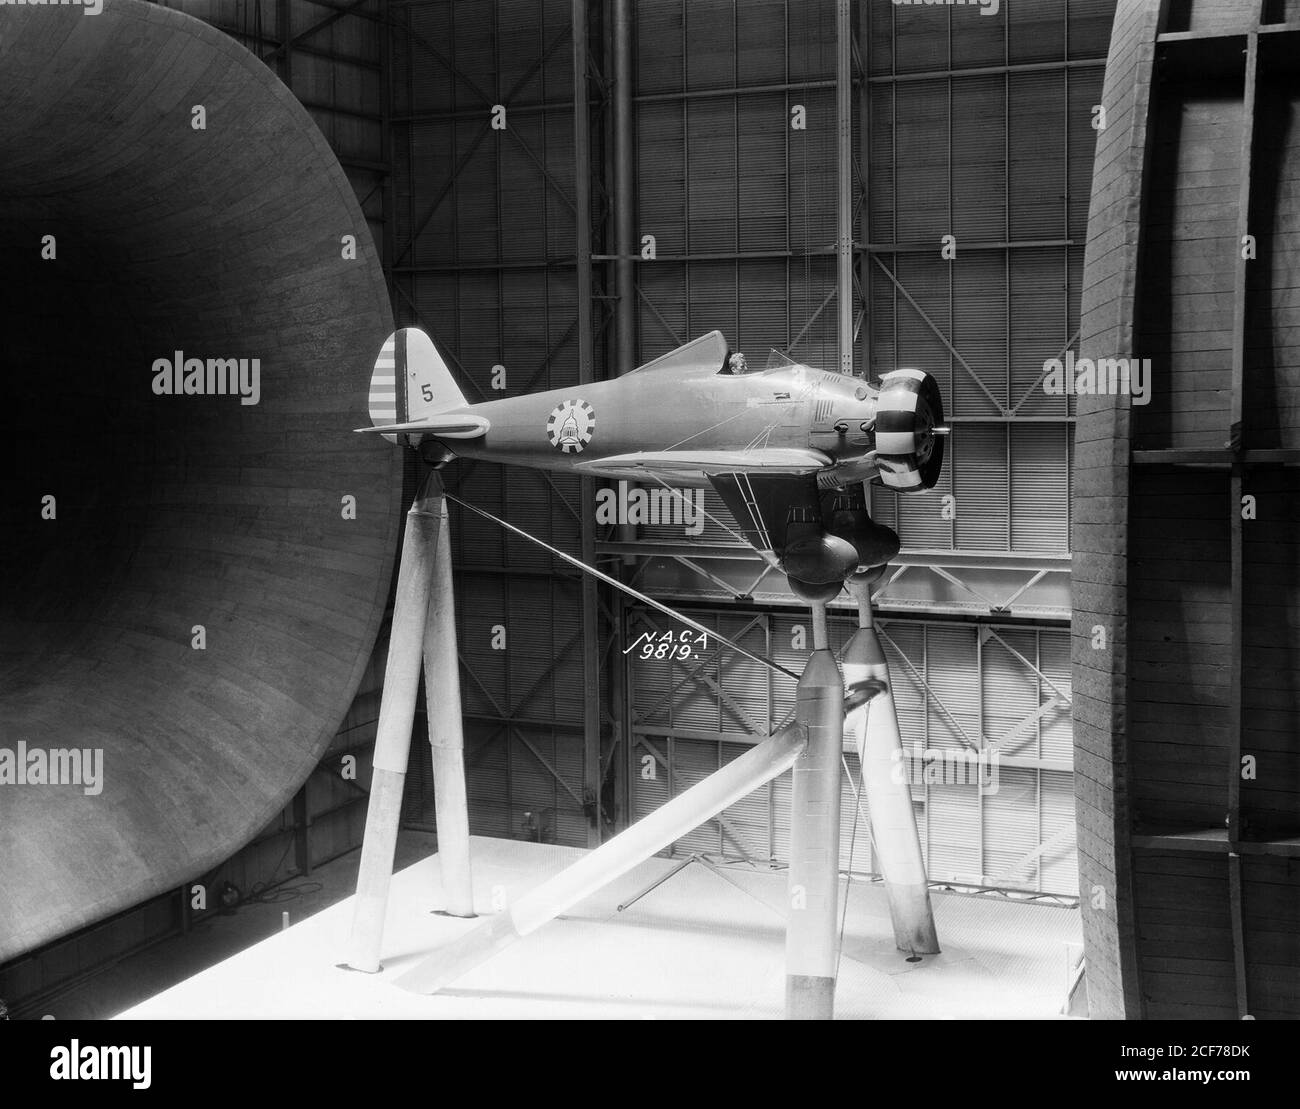 Il combattente Boeing P-26A montato nel tunnel completo 30 x 60 nel 1934. Soprannominato il 'Peashooter', fu il primo combattente dell'Esercito ad essere costruito interamente in metallo e ad impiegare la configurazione monoplana ad ala bassa. Le ali, però, erano rinforzate esternamente, e il carrello di atterraggio era fisso. Il Peashooter è stato utilizzato anche durante una misurazione del campo visivo del pilota. Foto Stock